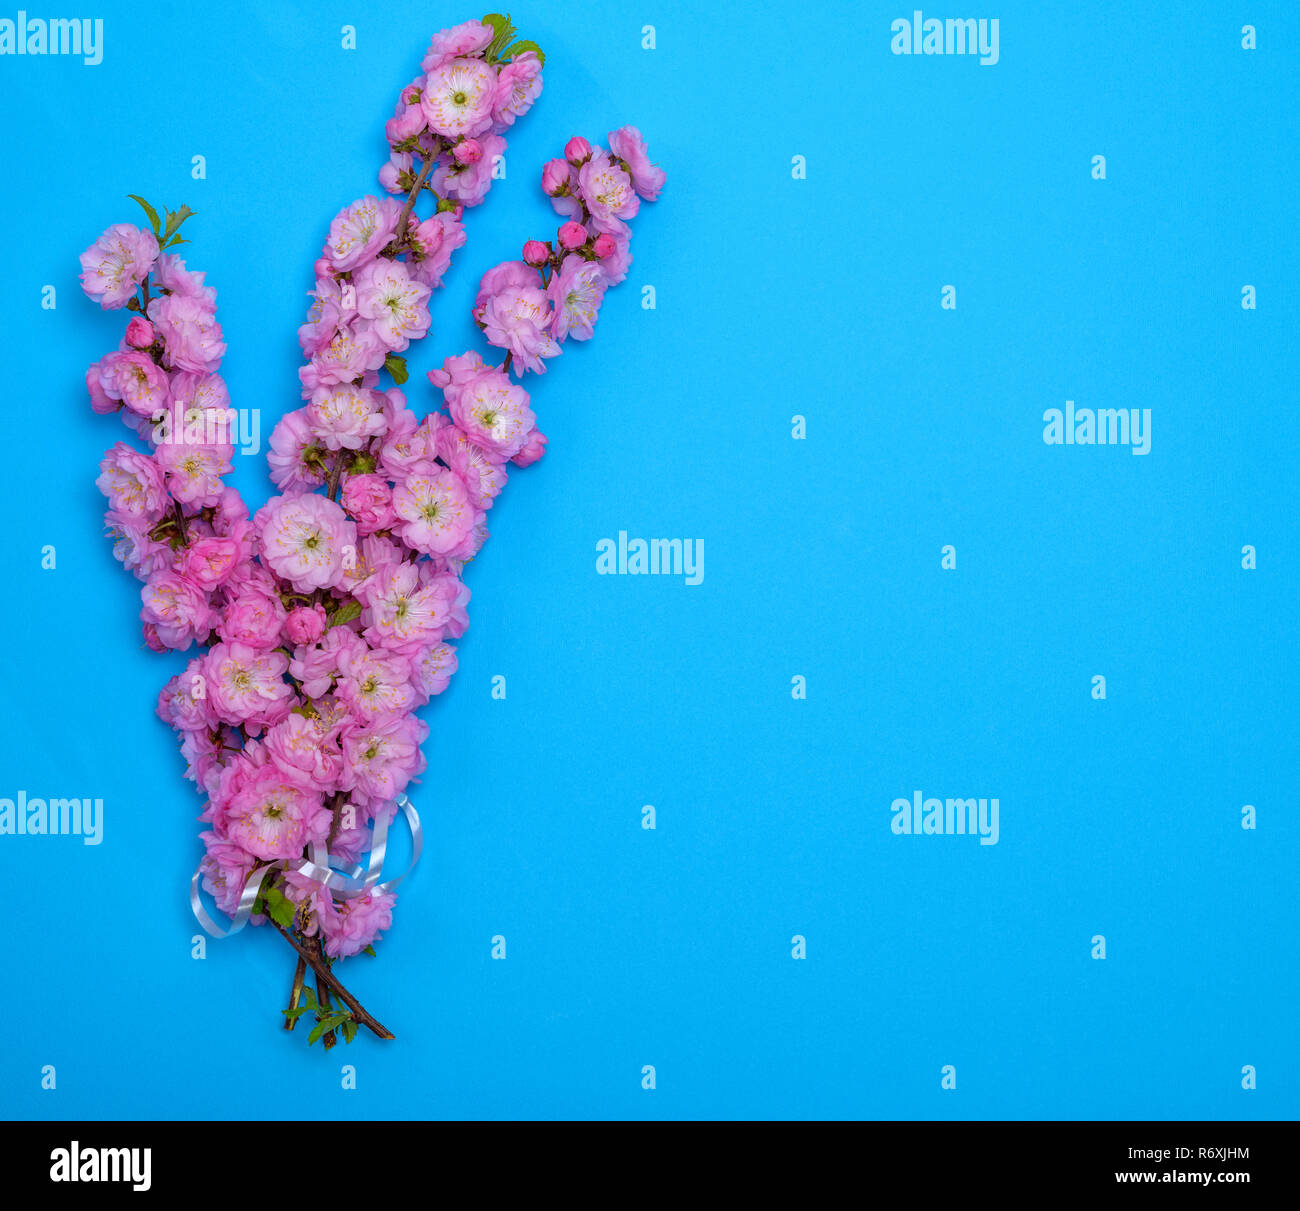 Rami con fiori di colore rosa Louiseania triloba su uno sfondo blu Foto Stock